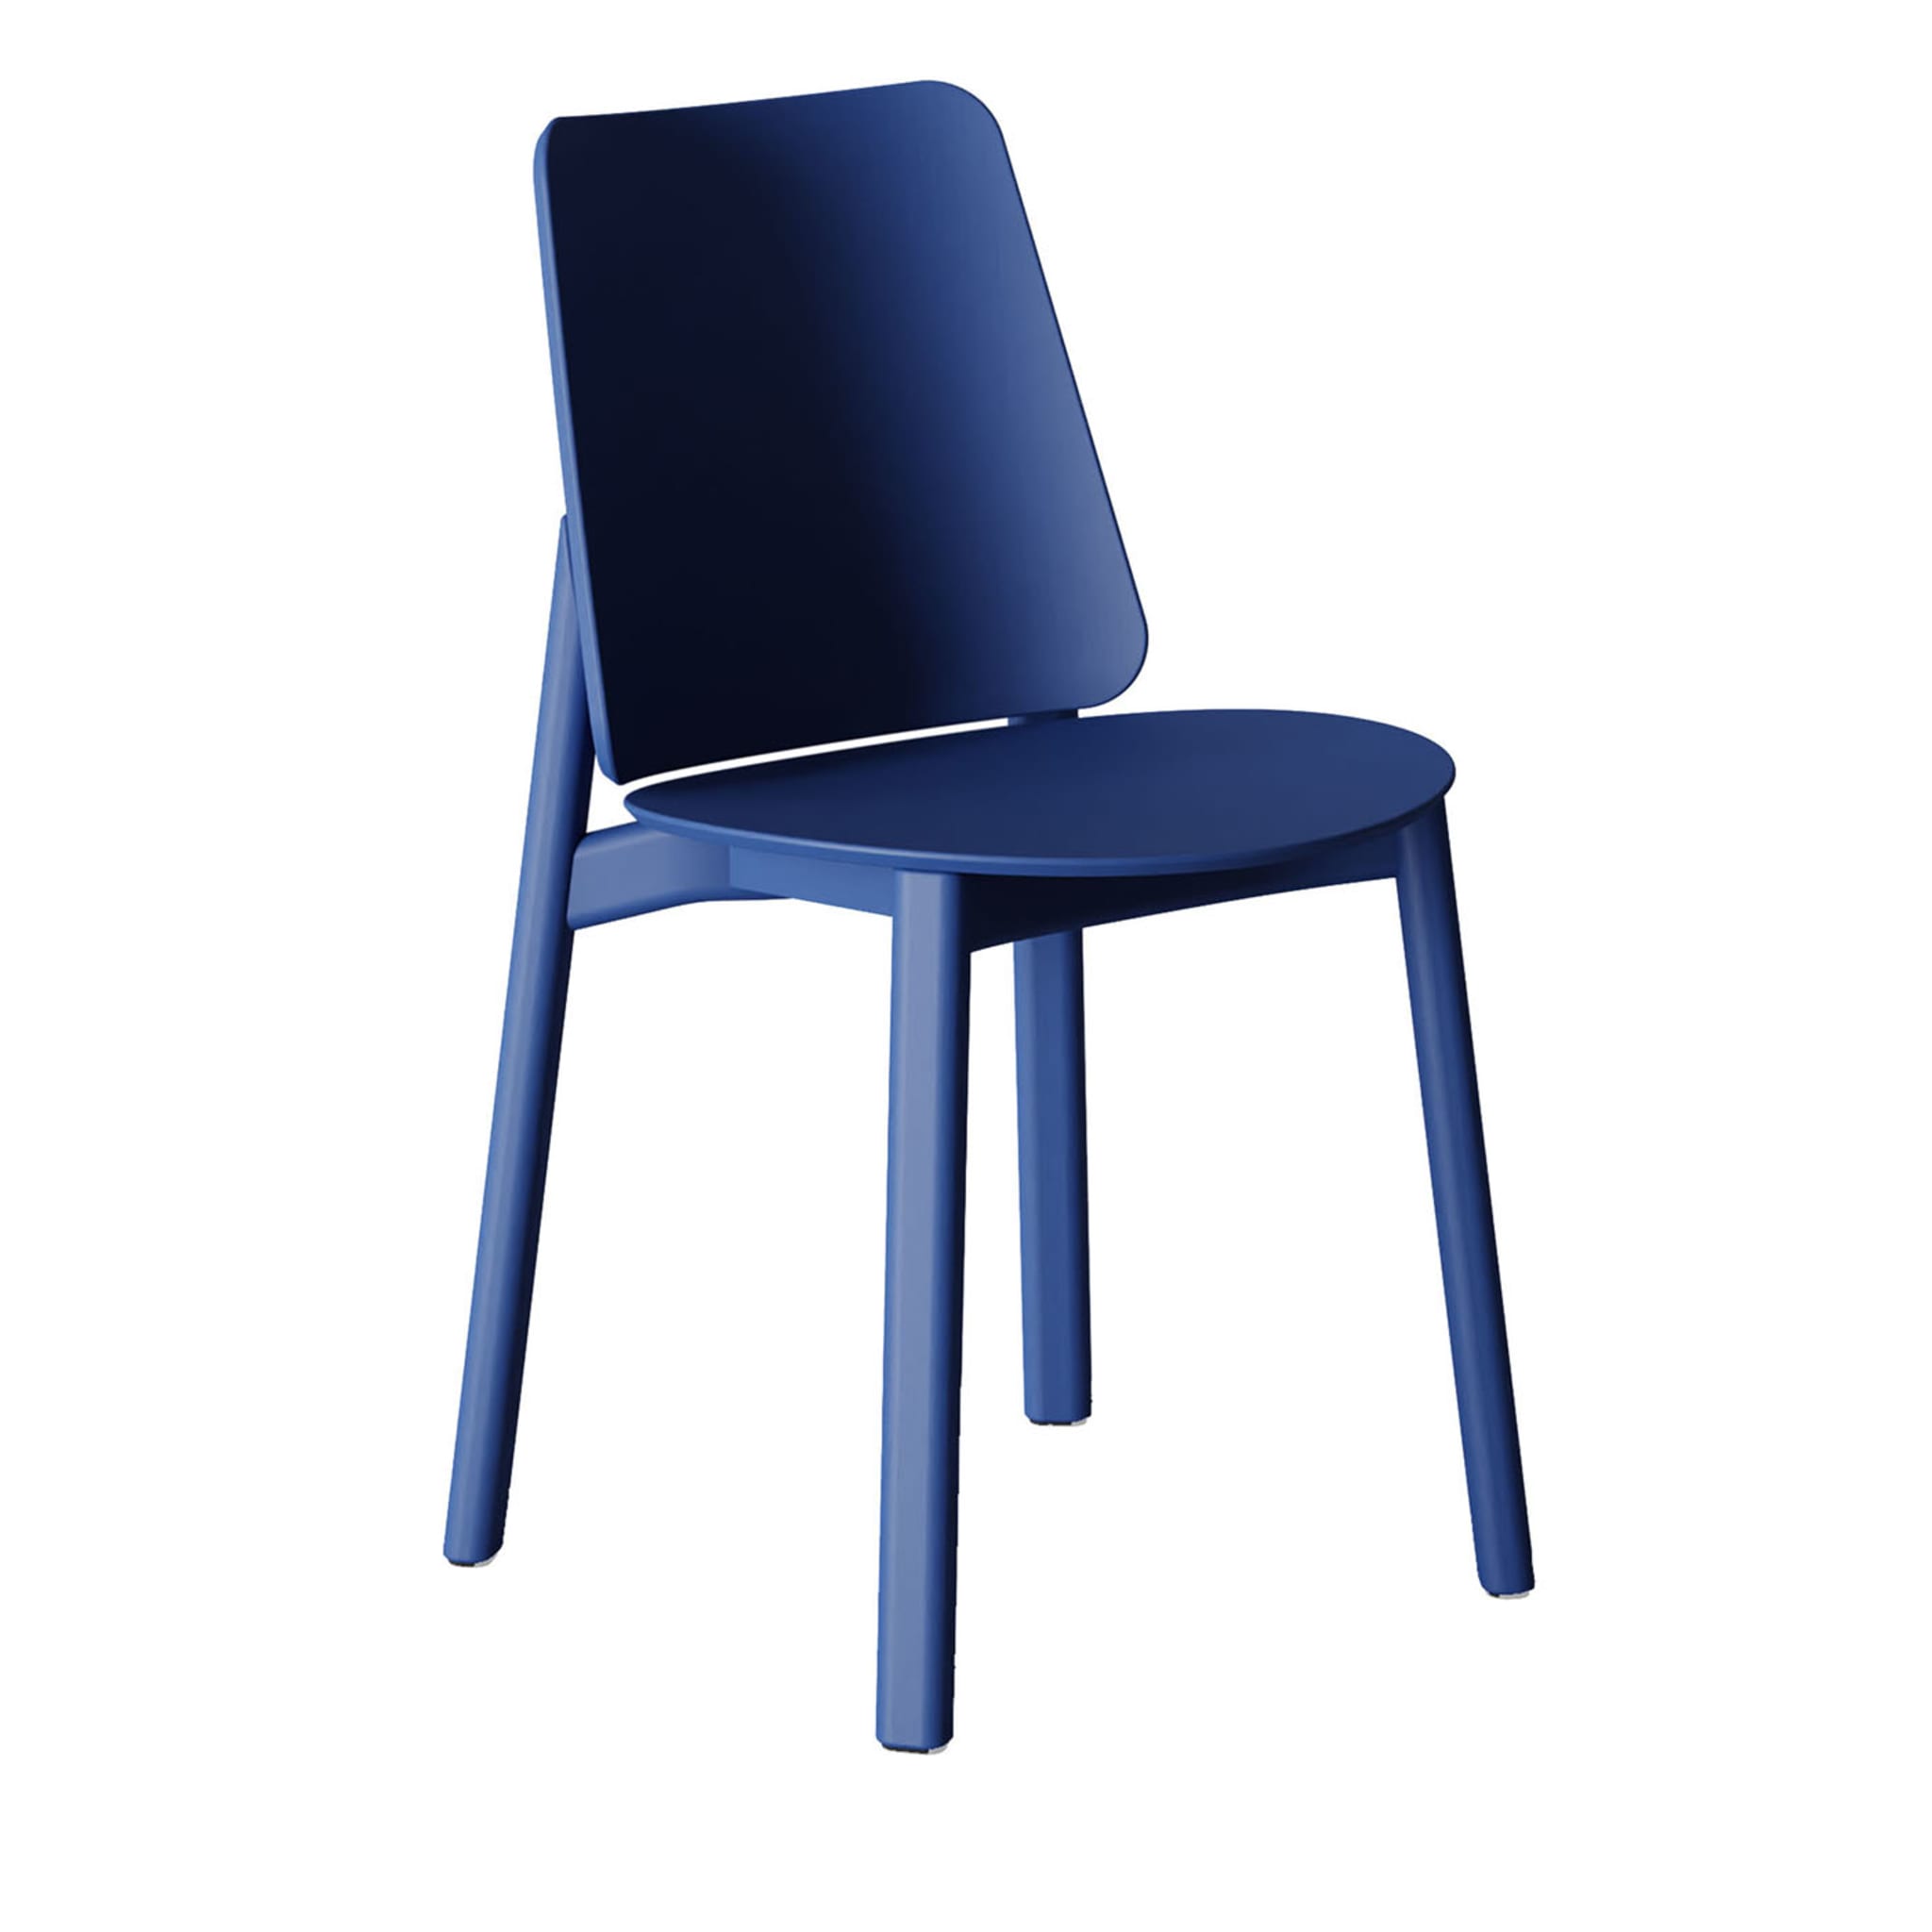 Billa Blue Chair by Claudio Avetta - Main view